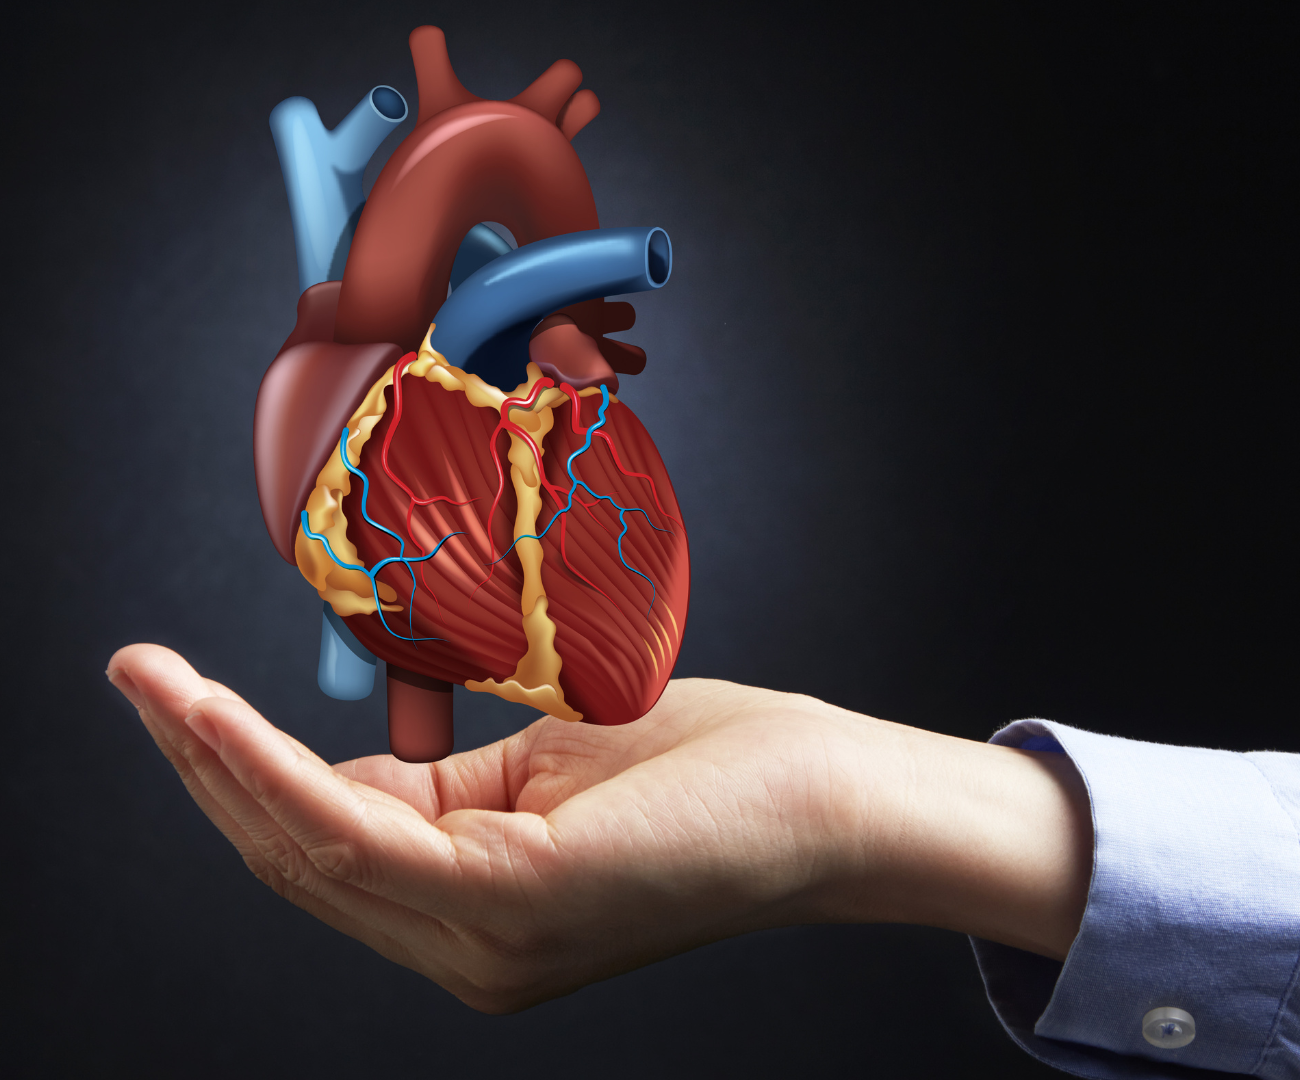 NL-GHK-Cu w profilaktyce chorób sercowo-naczyniowych